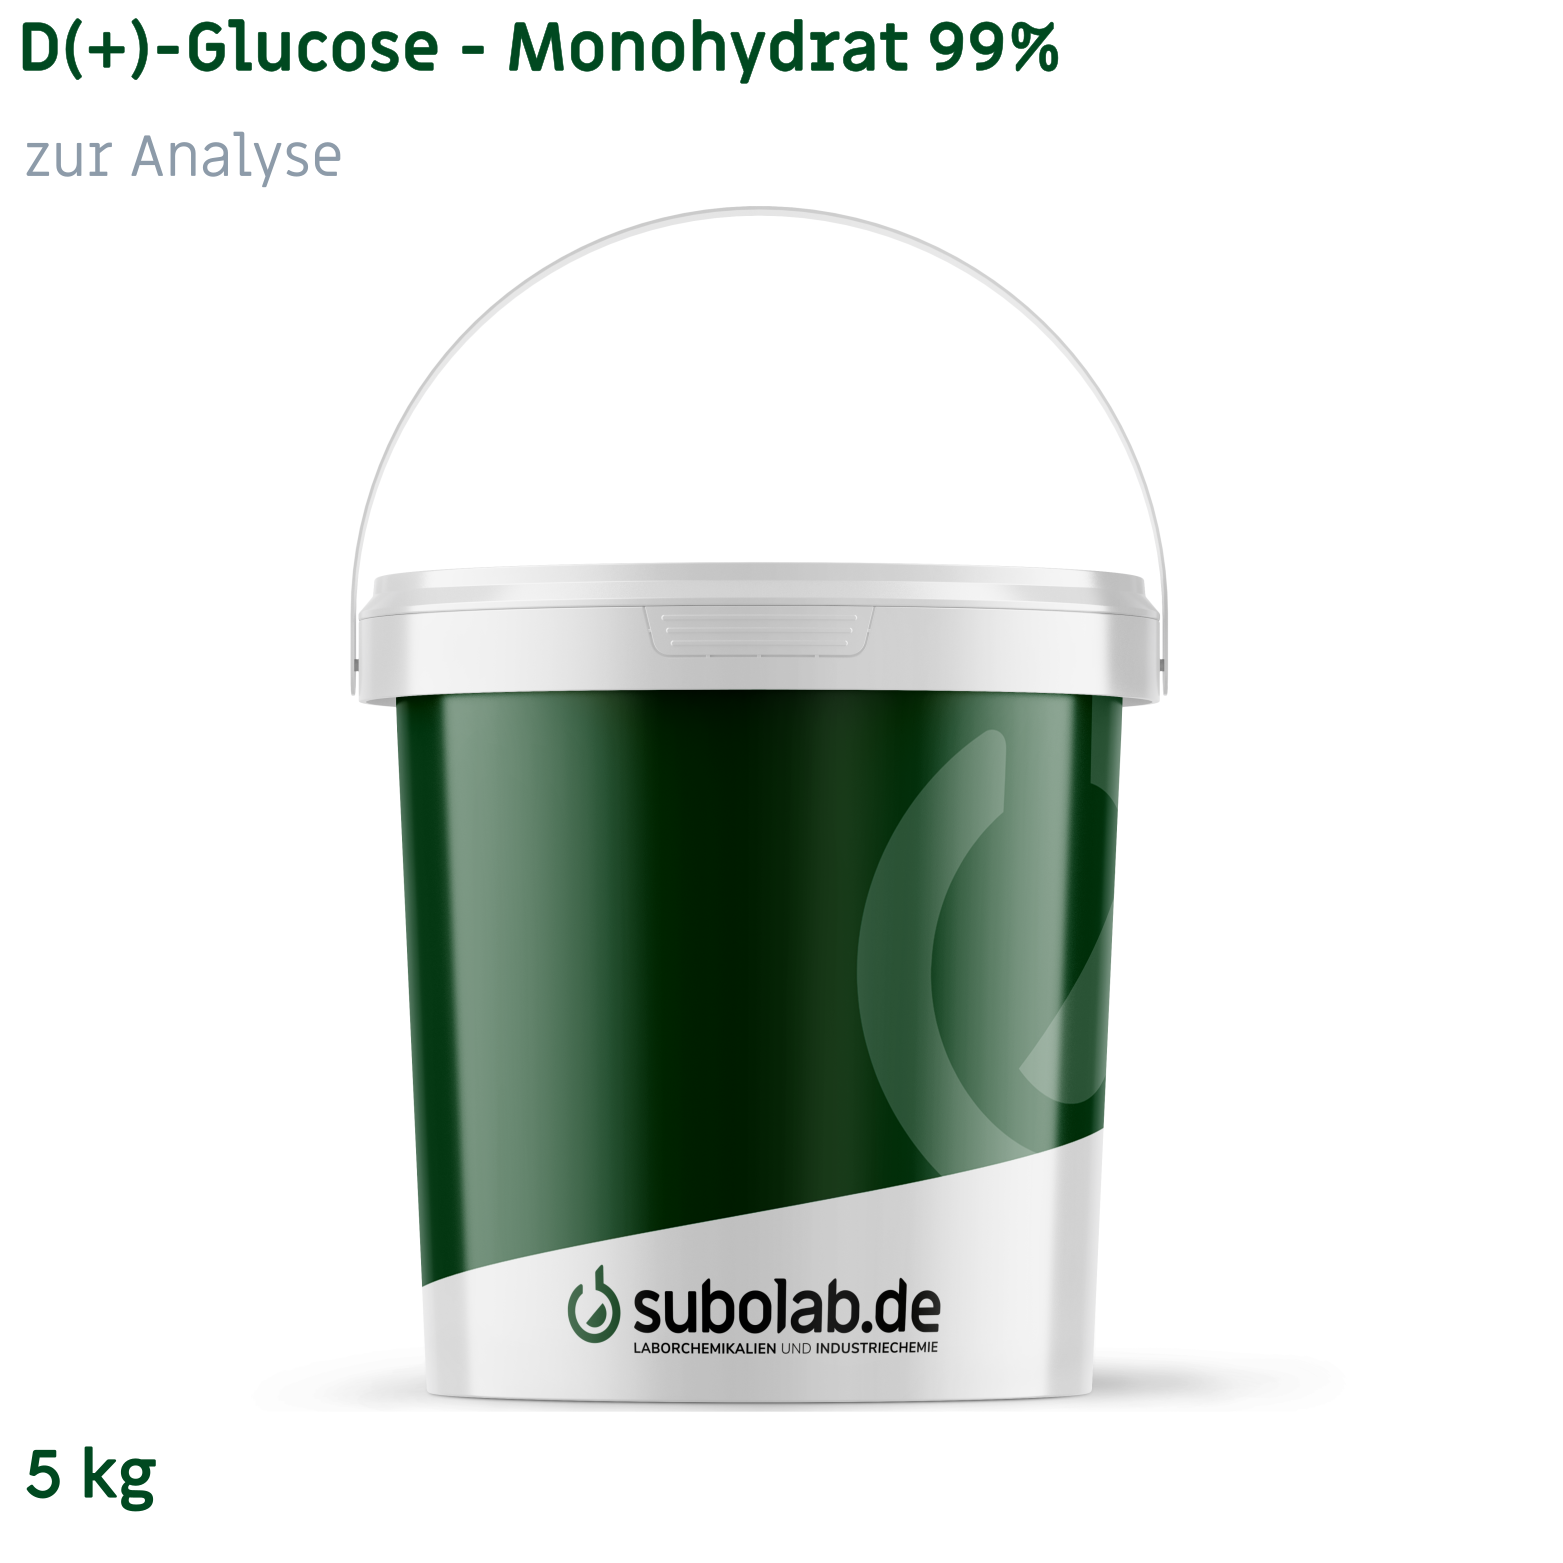 Bild von D(+)-Glucose - Monohydrat 99% zur Analyse (5 kg)